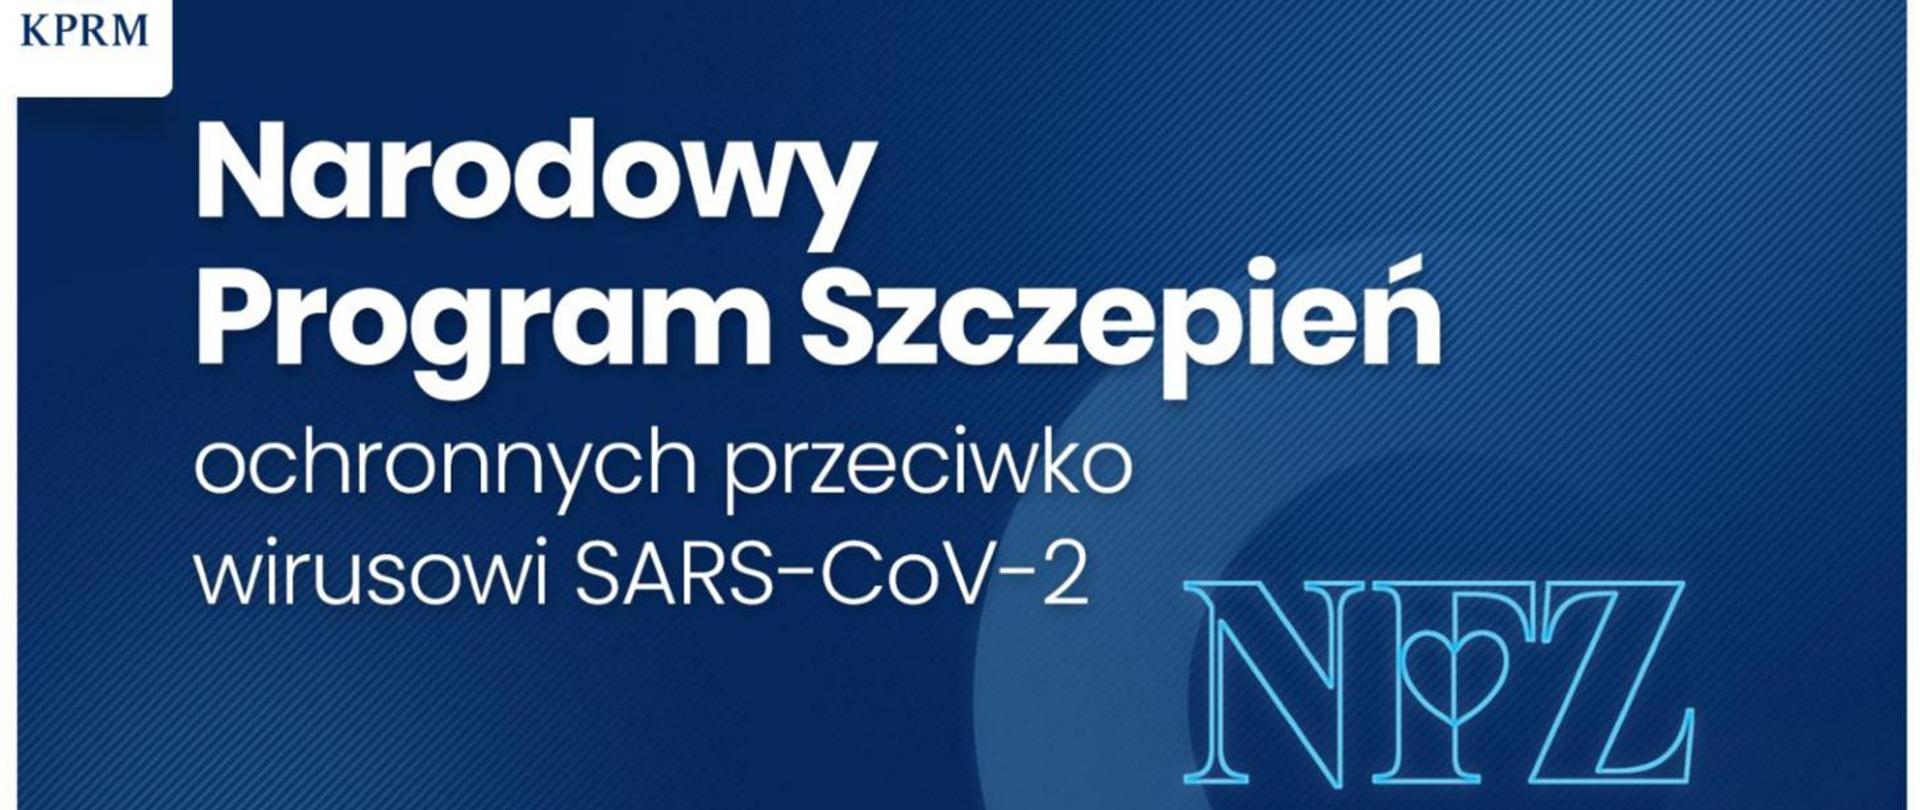 Plansza z napisem: Narodowy Program Szczepień ochronnych przeciwko wirusowi SARS-CoV-2 oraz logo KPRM i NFZ